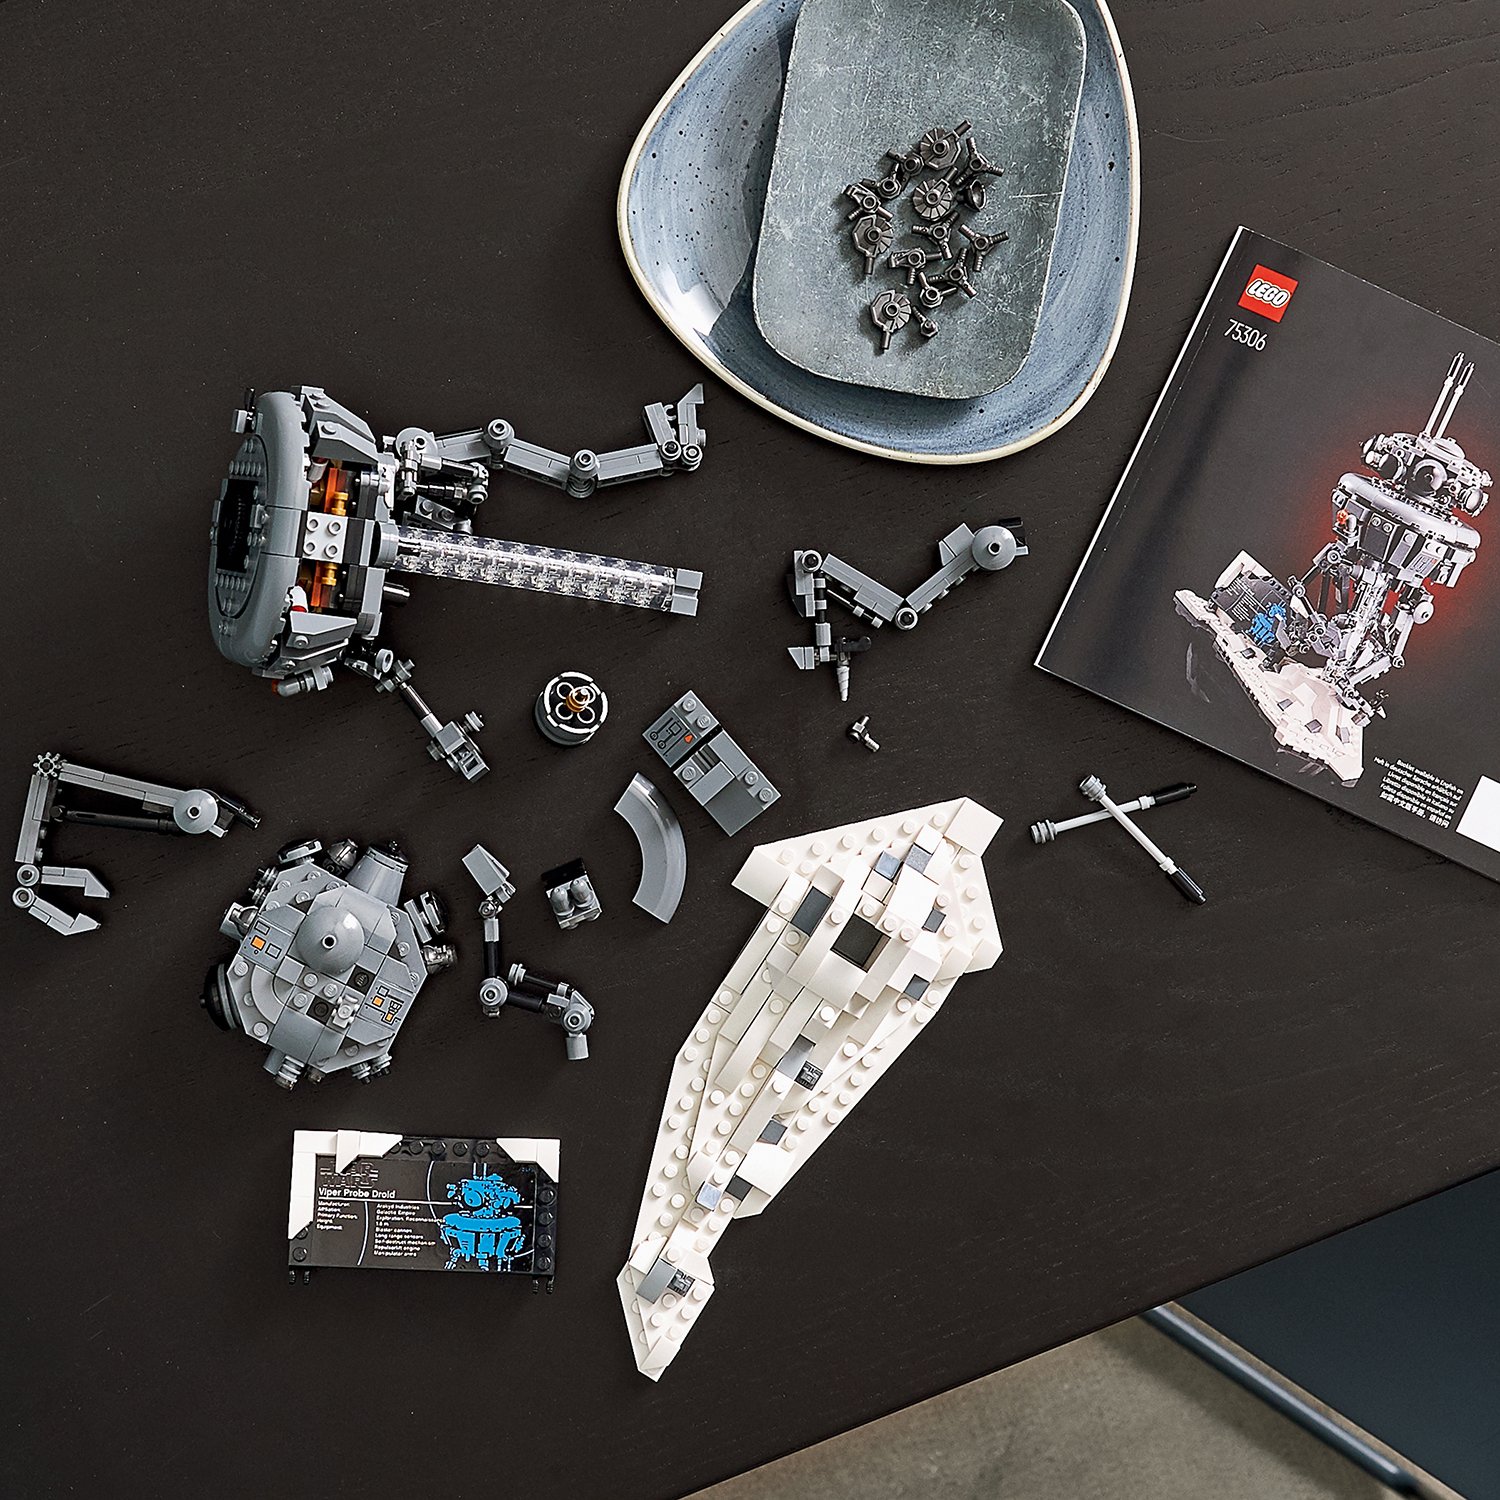 Конструктор LEGO 75306 Star Wars Имперский разведывательный дройд